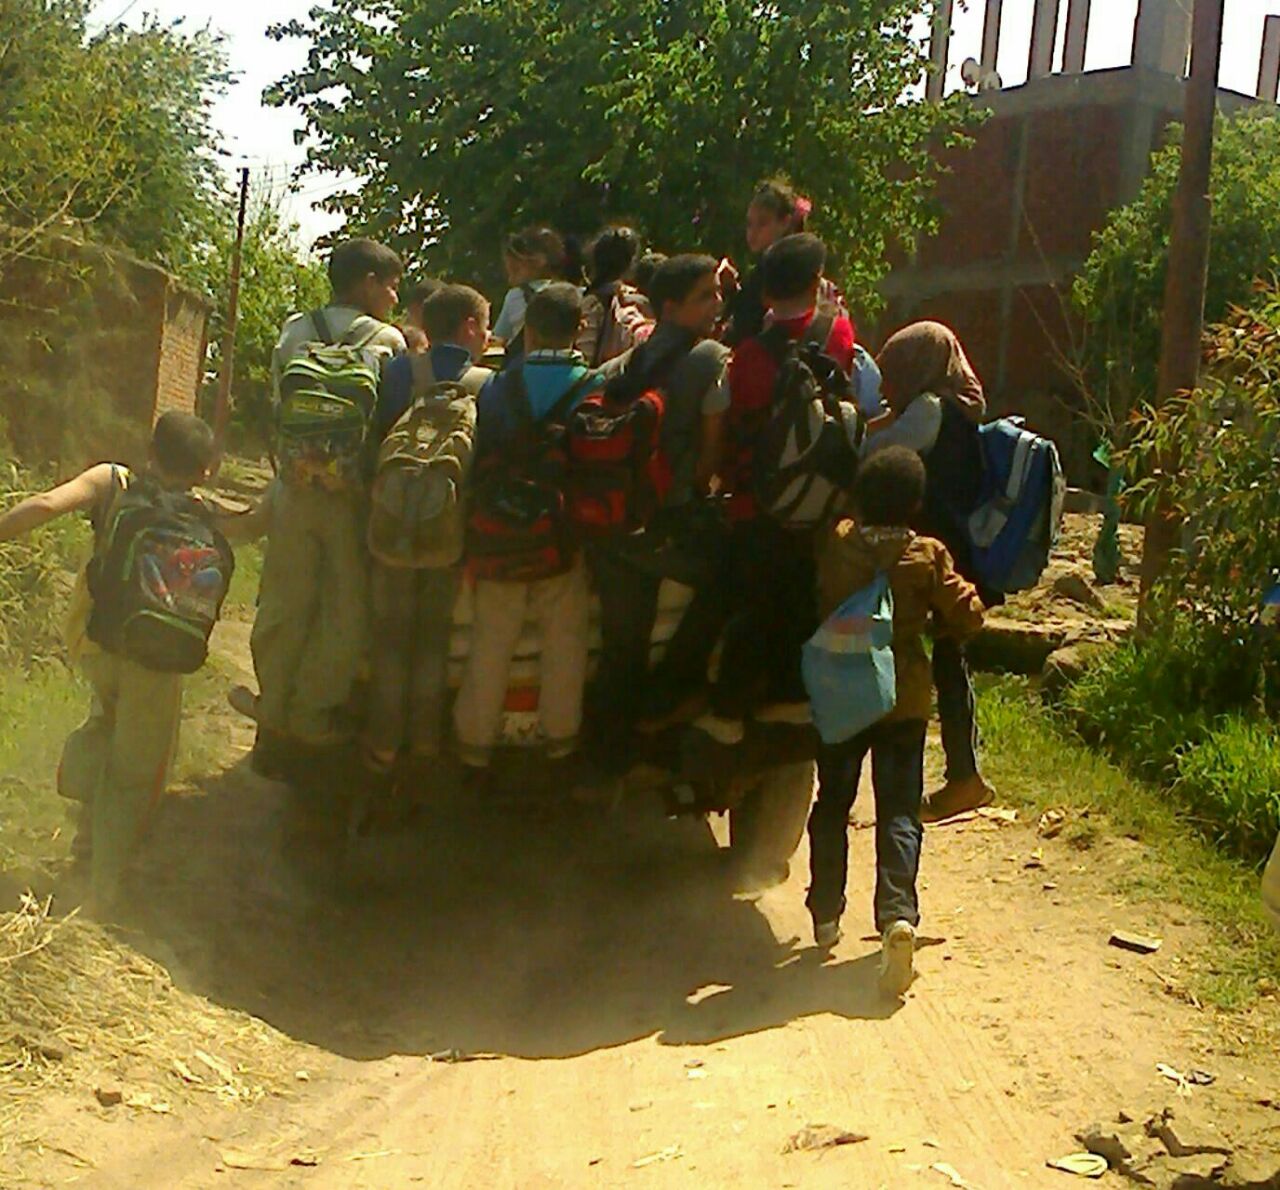 الأطفال مكدسين بأحد السيارات للذهاب للمدرسة